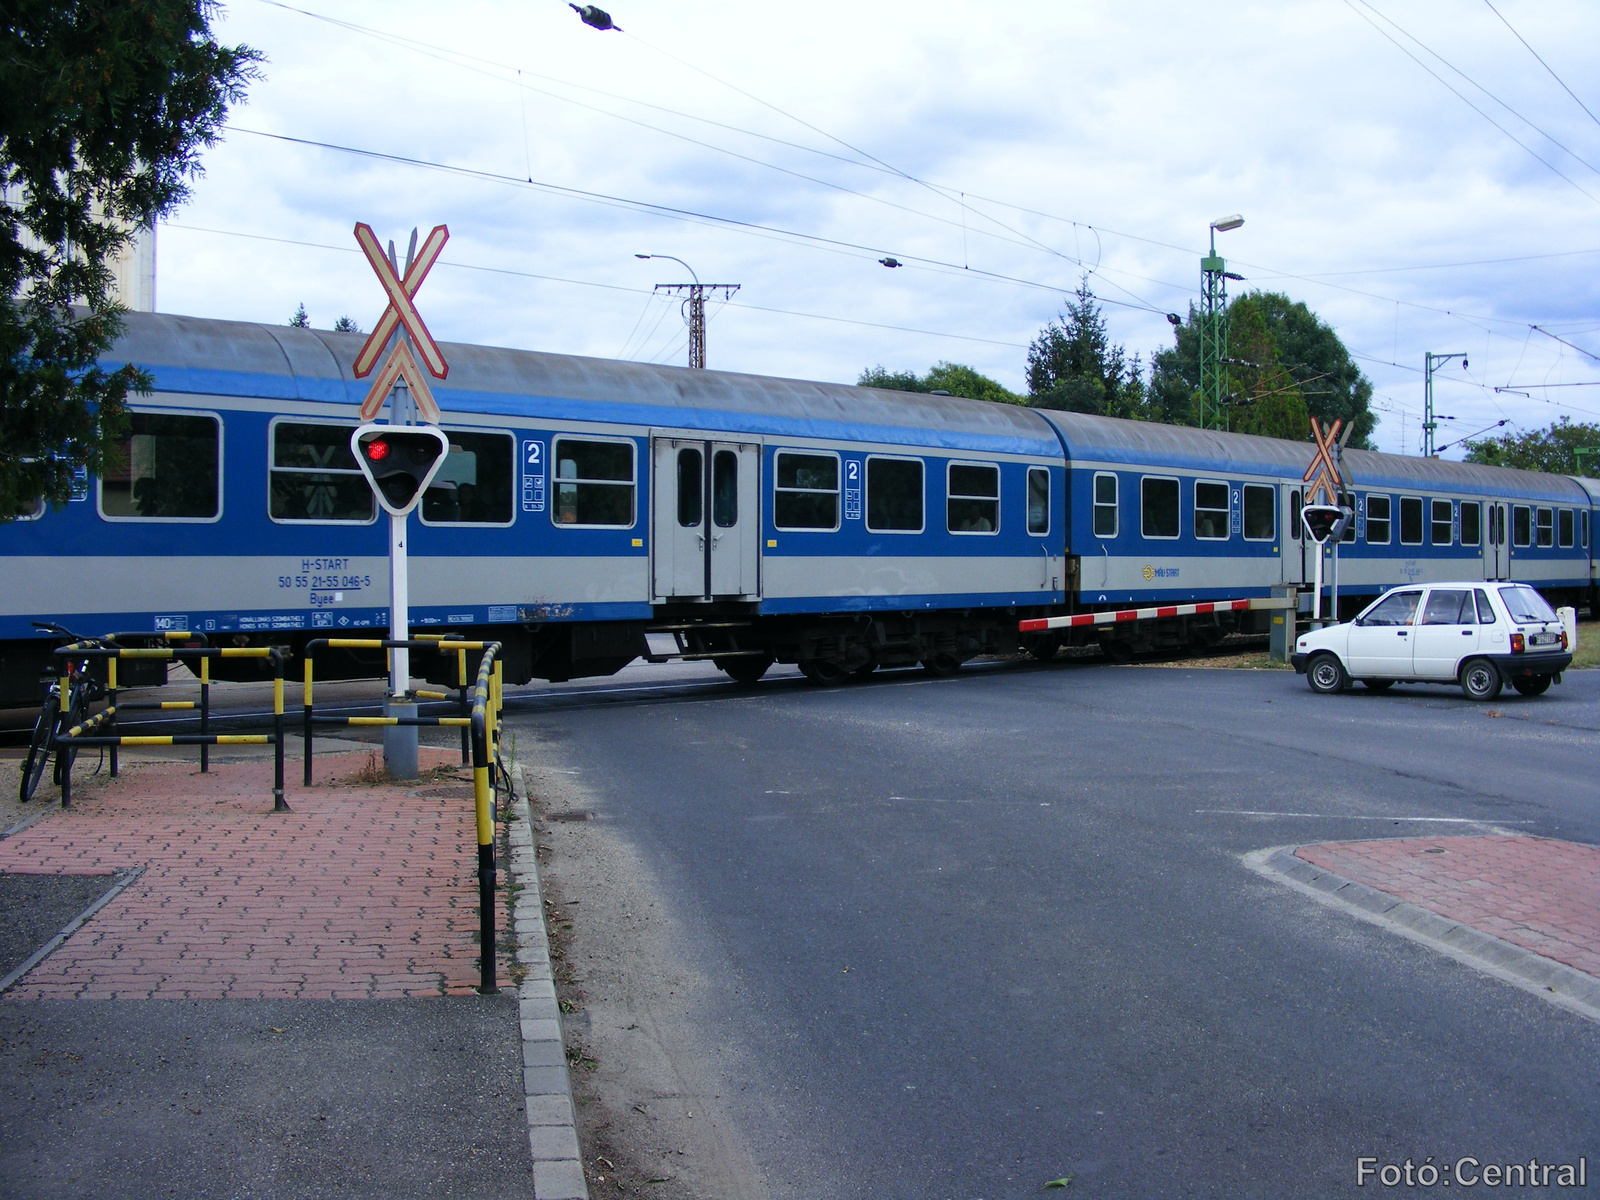 Budapest-Keleti pályaudvartól,Sopronig közlekedő gyorsvonat indu